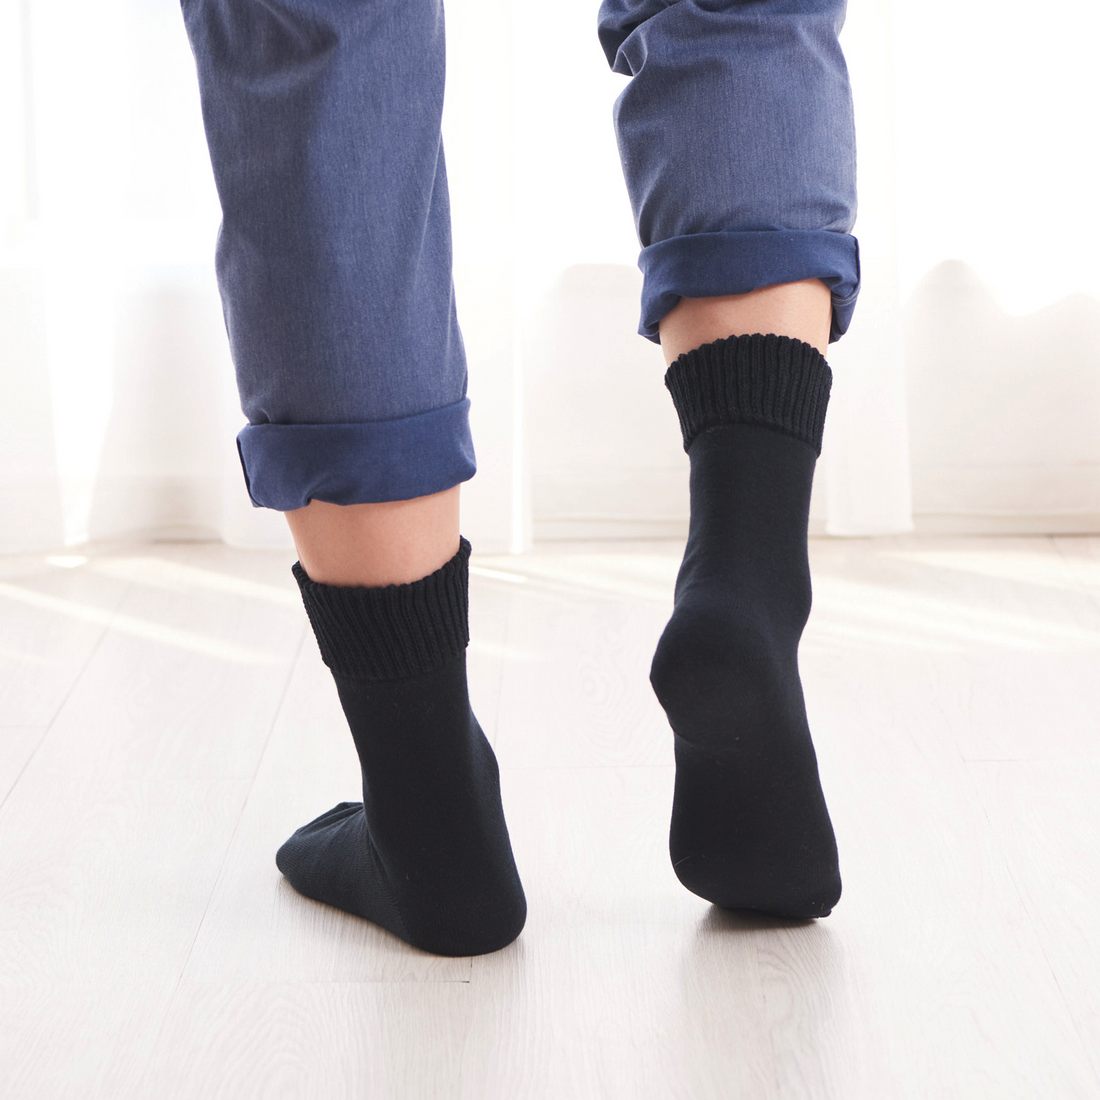 Men – Japanese socks Taiyoknit online shop